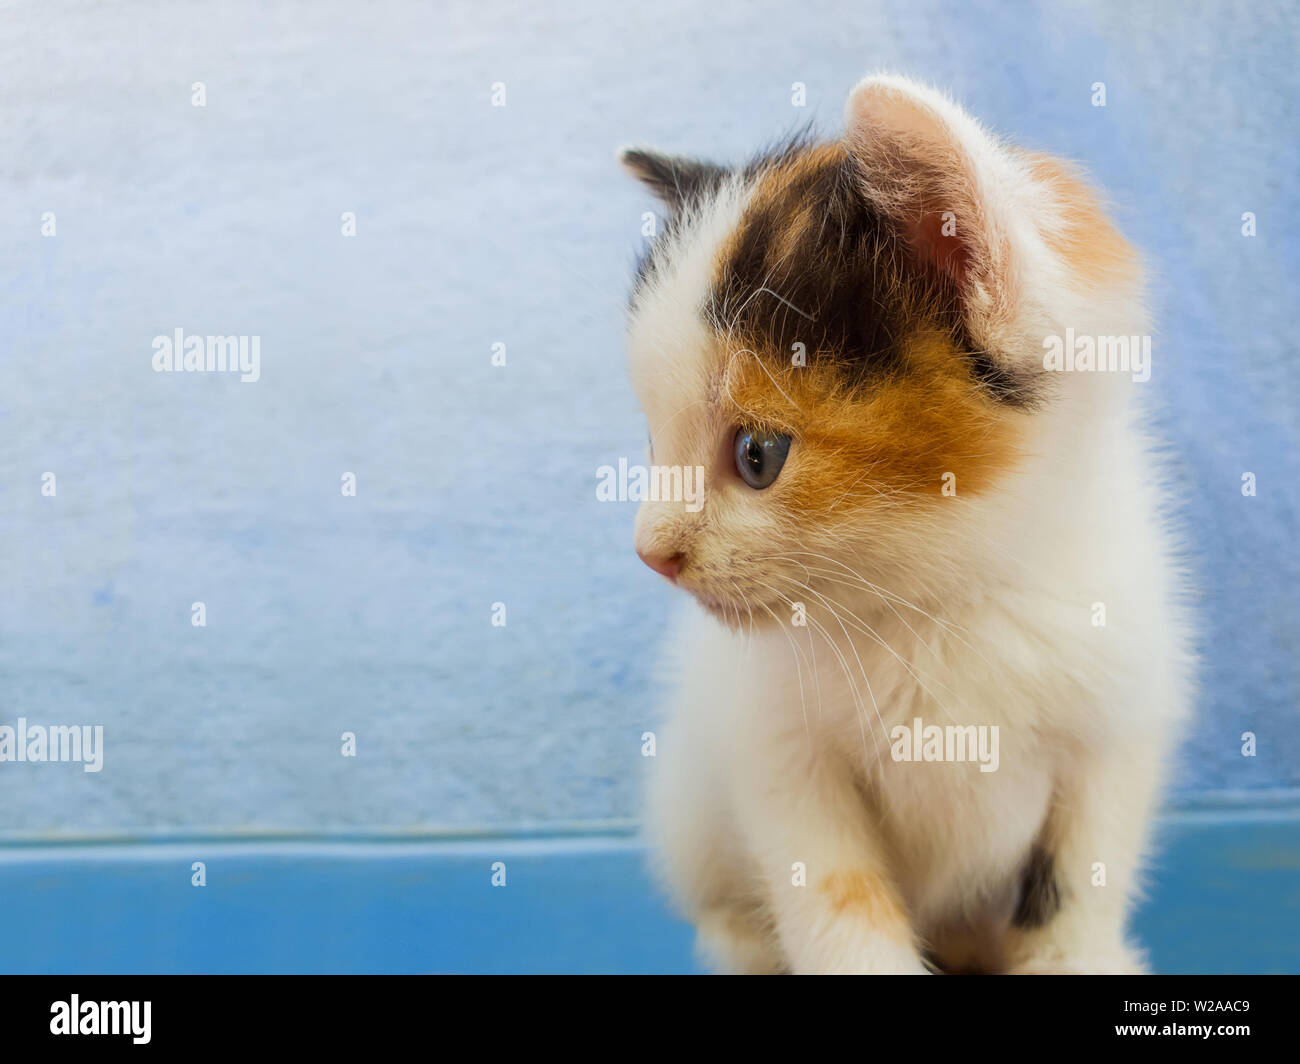 Close Up retrato de un adorable pequeño gatito blanco con manchas de color naranja y negro mirando curioso aparte sobre una pared azul de fondo. Foto de stock